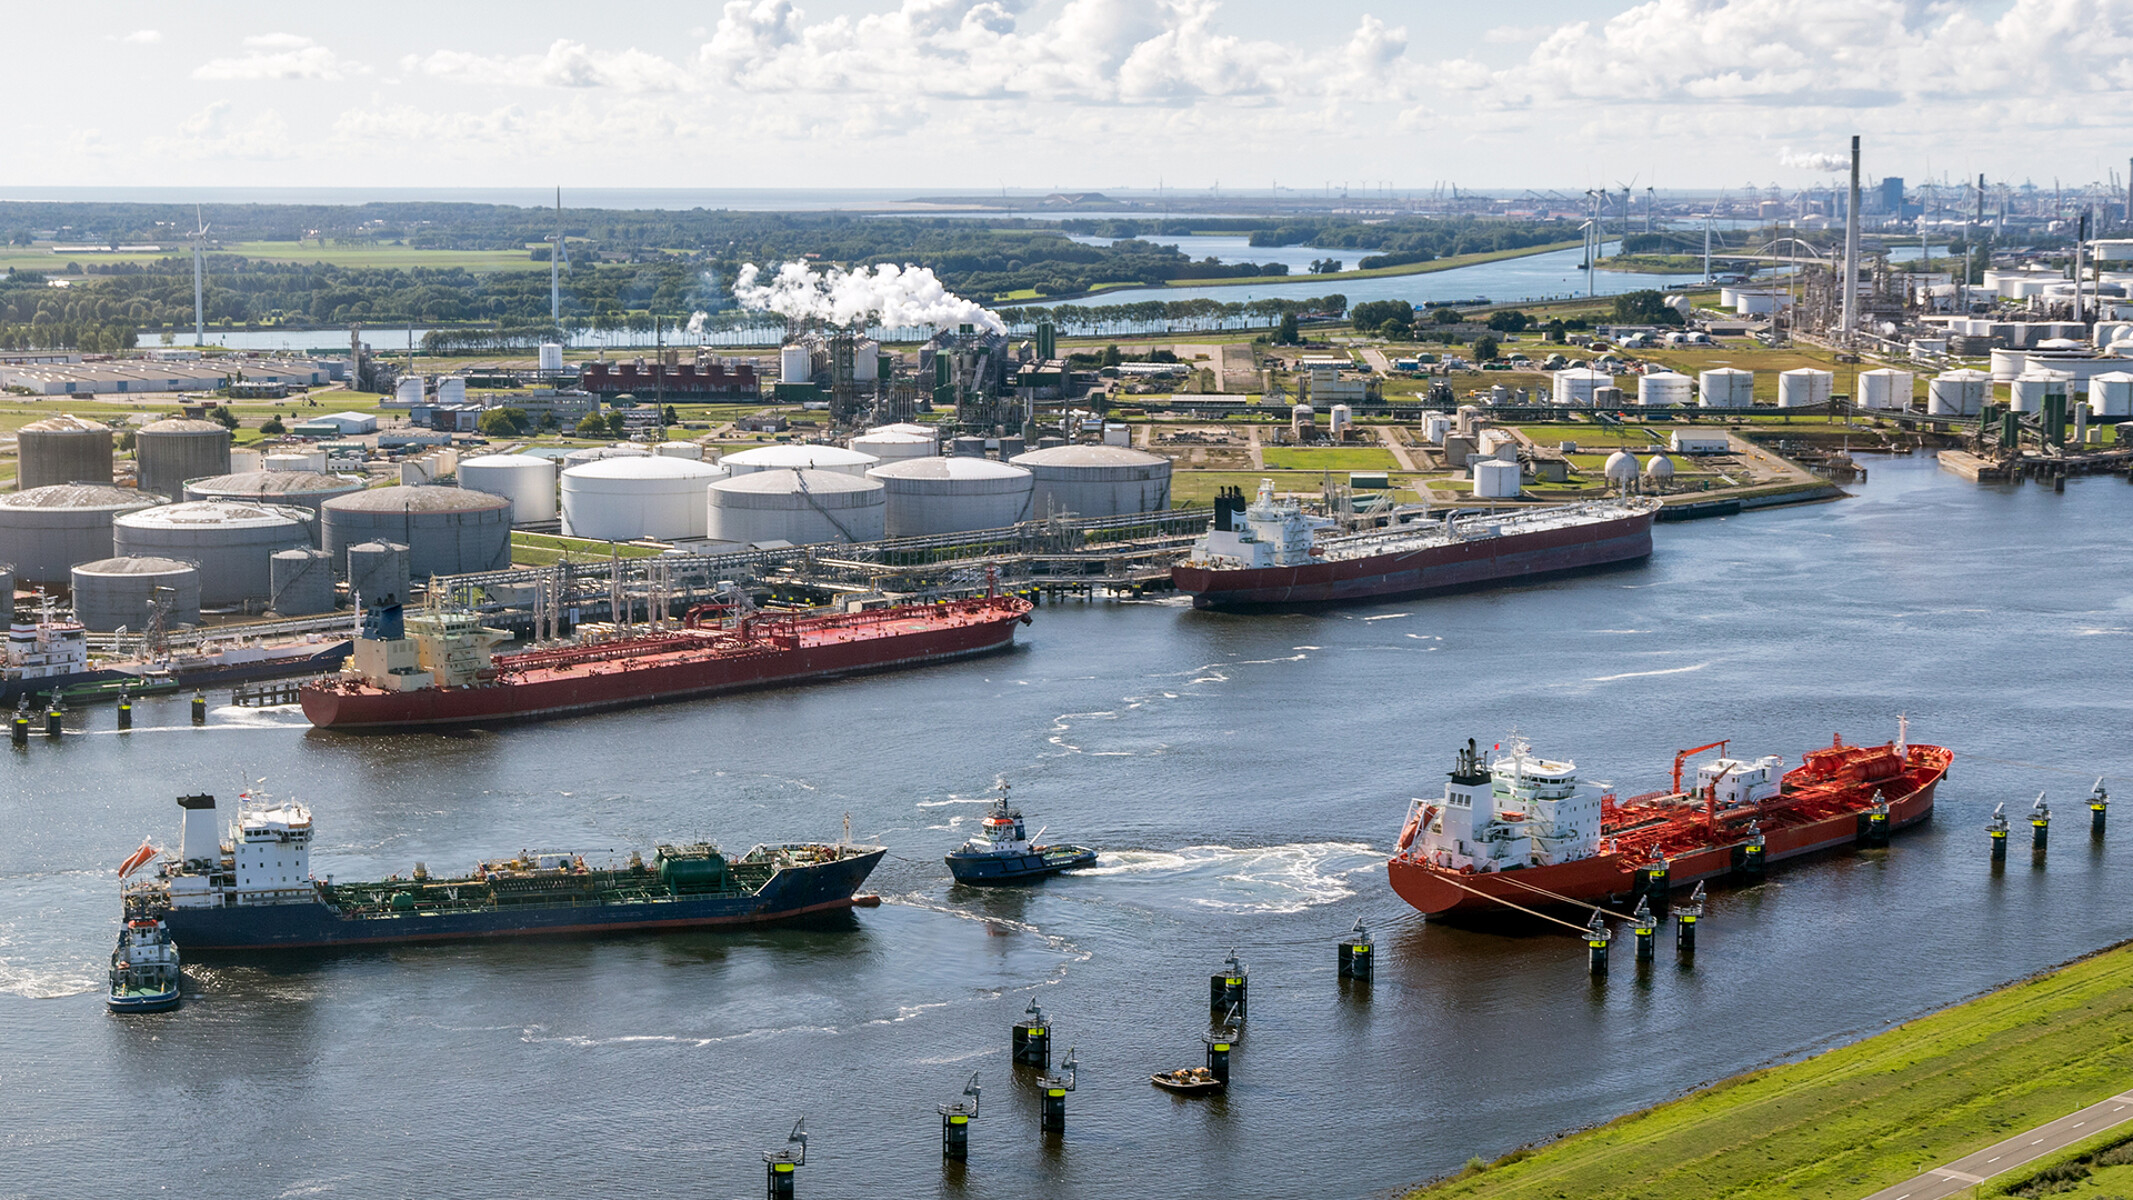 Hai tàu chở dầu trên sông chuẩn bị cập cảng với một hệ thống lọc dầu lớn